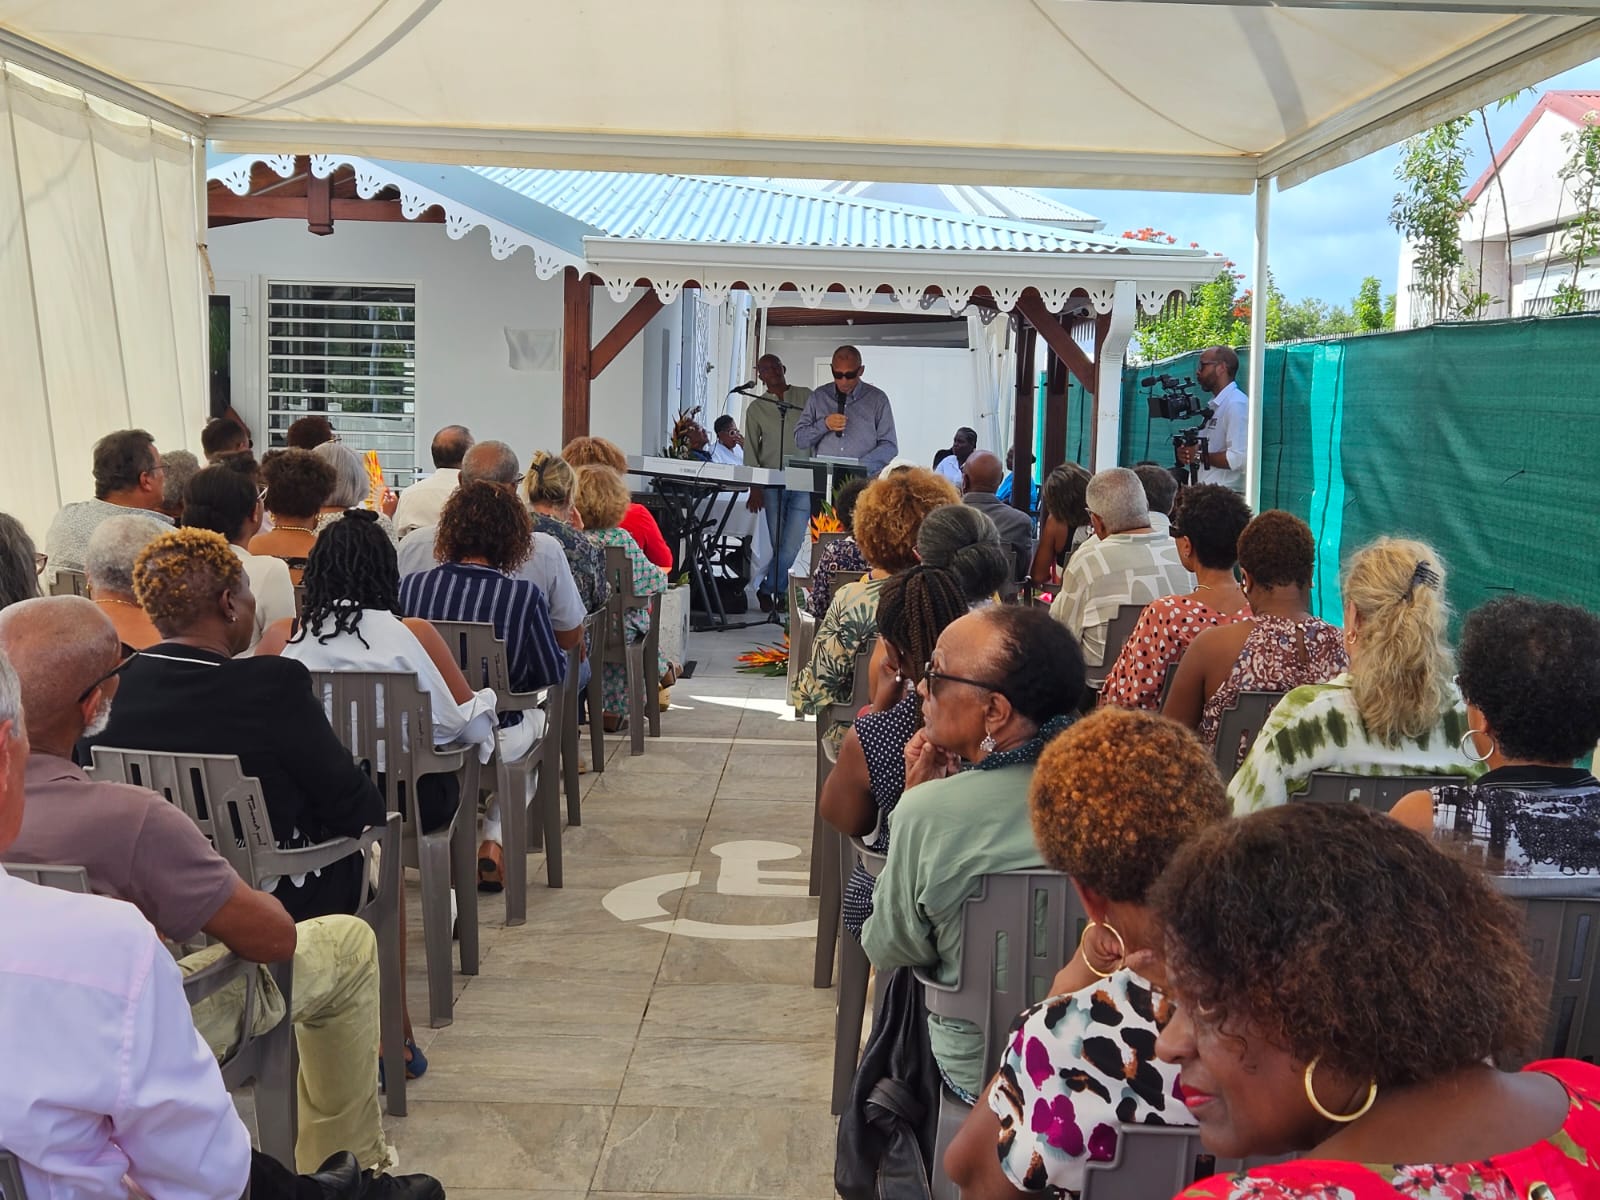     Inauguration d'un centre d'accueil de jour pour les personnes âgées, véritable relais des aidants familiaux

